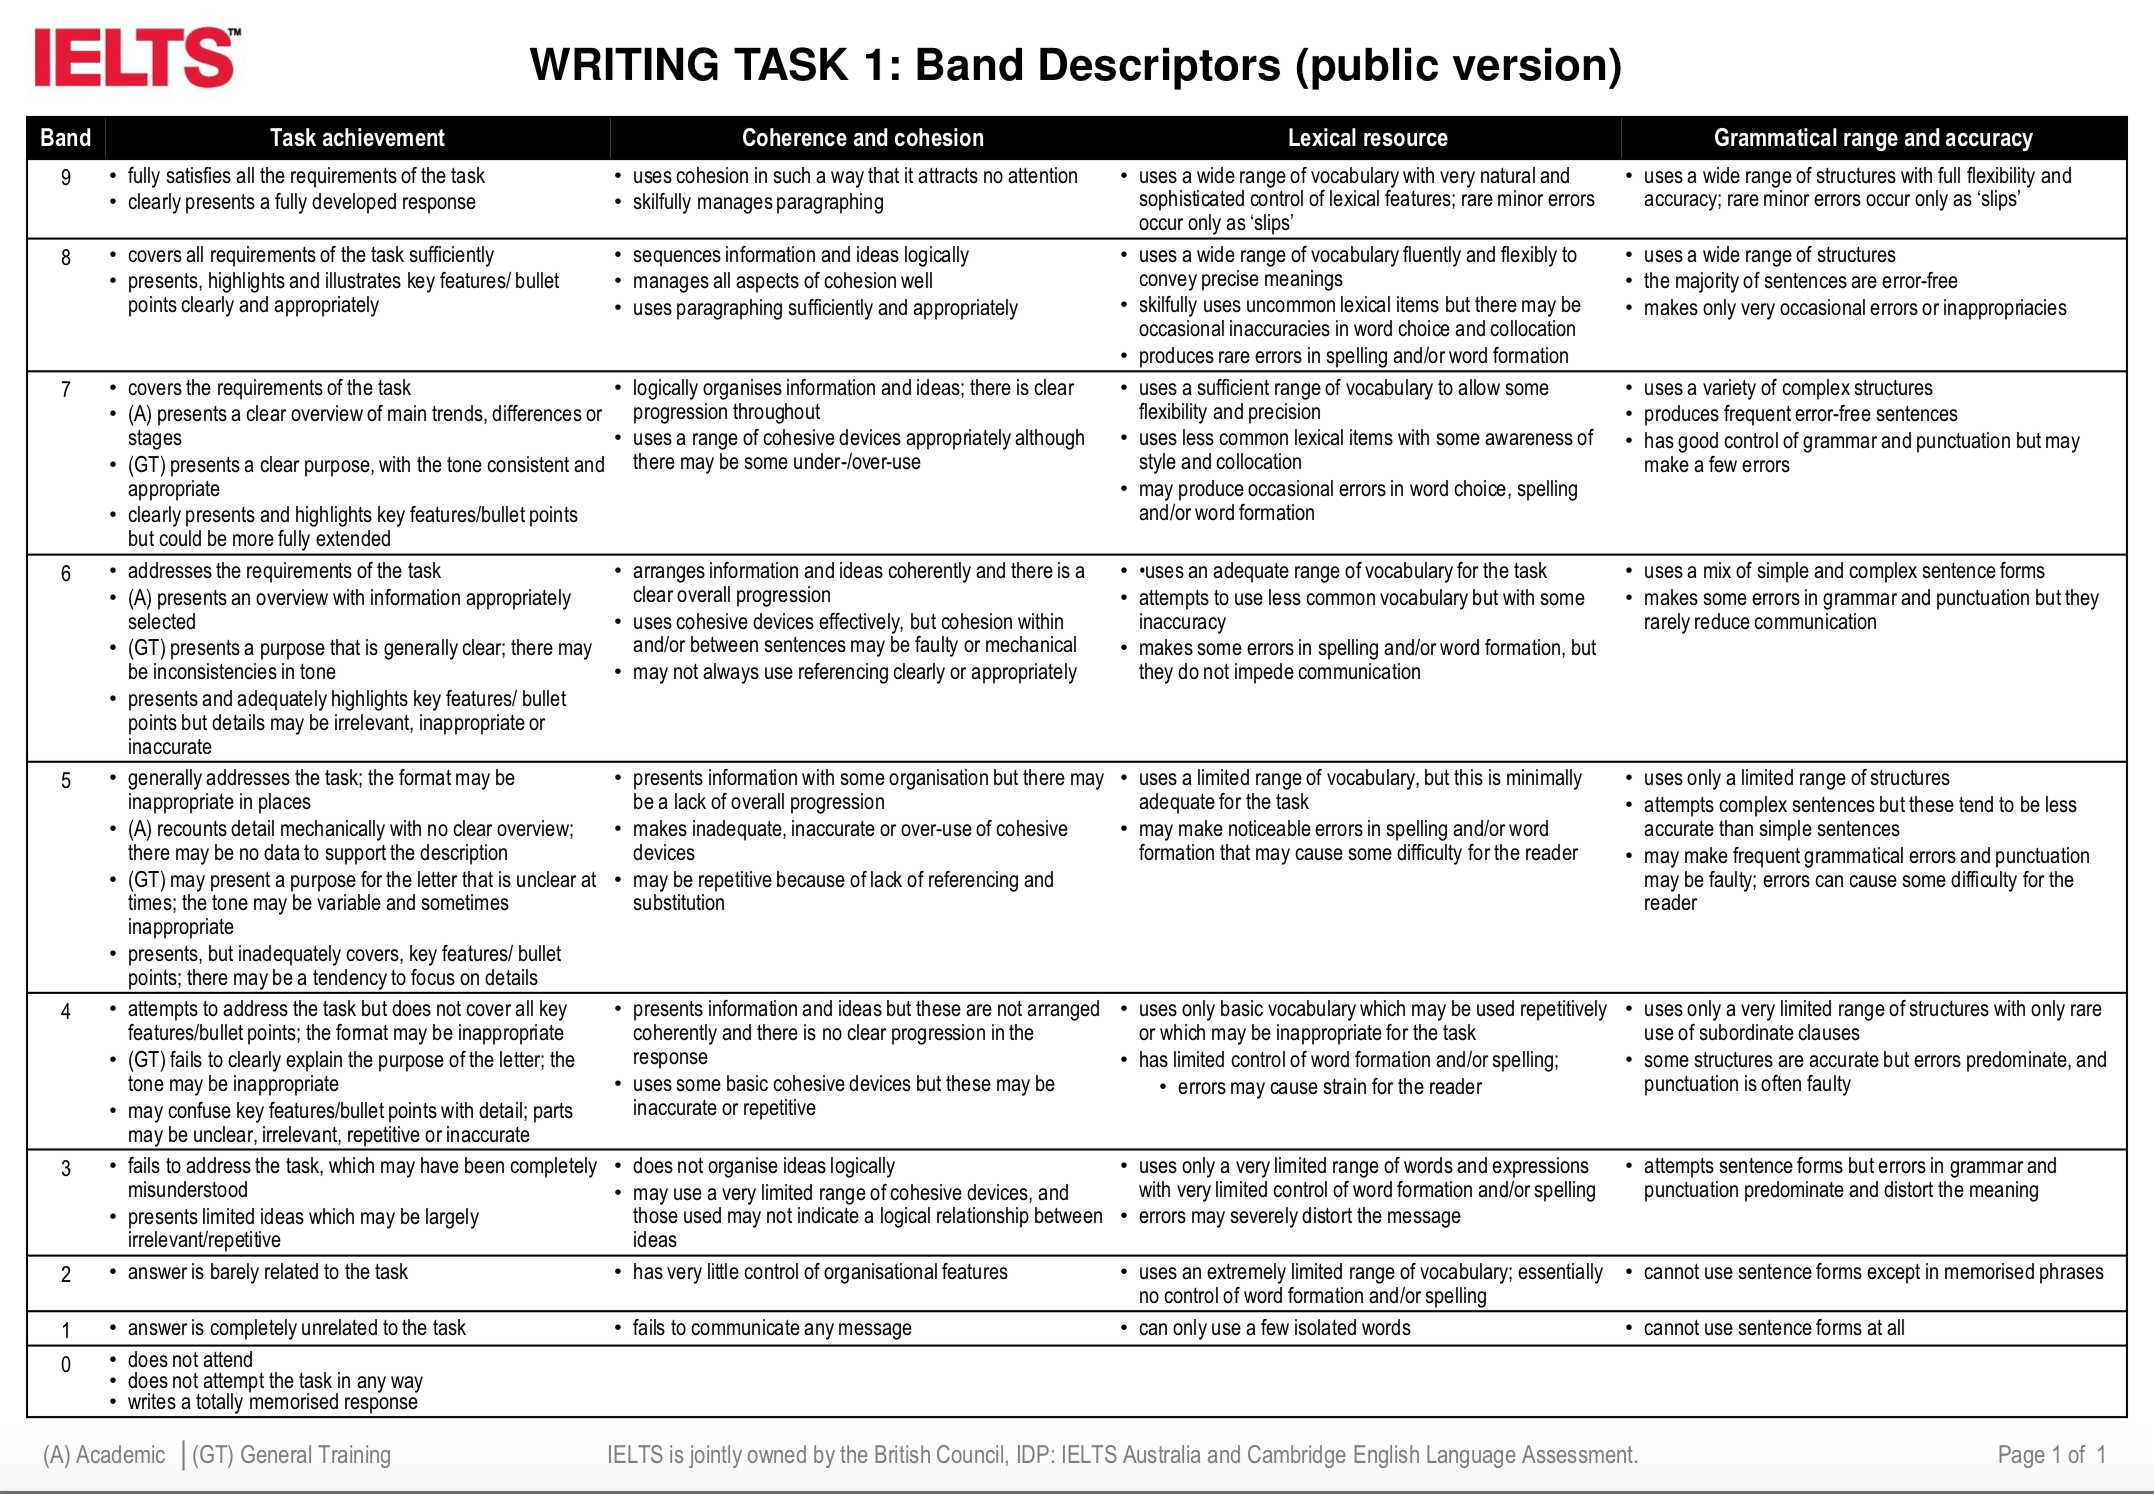 Writing Marking Task 1